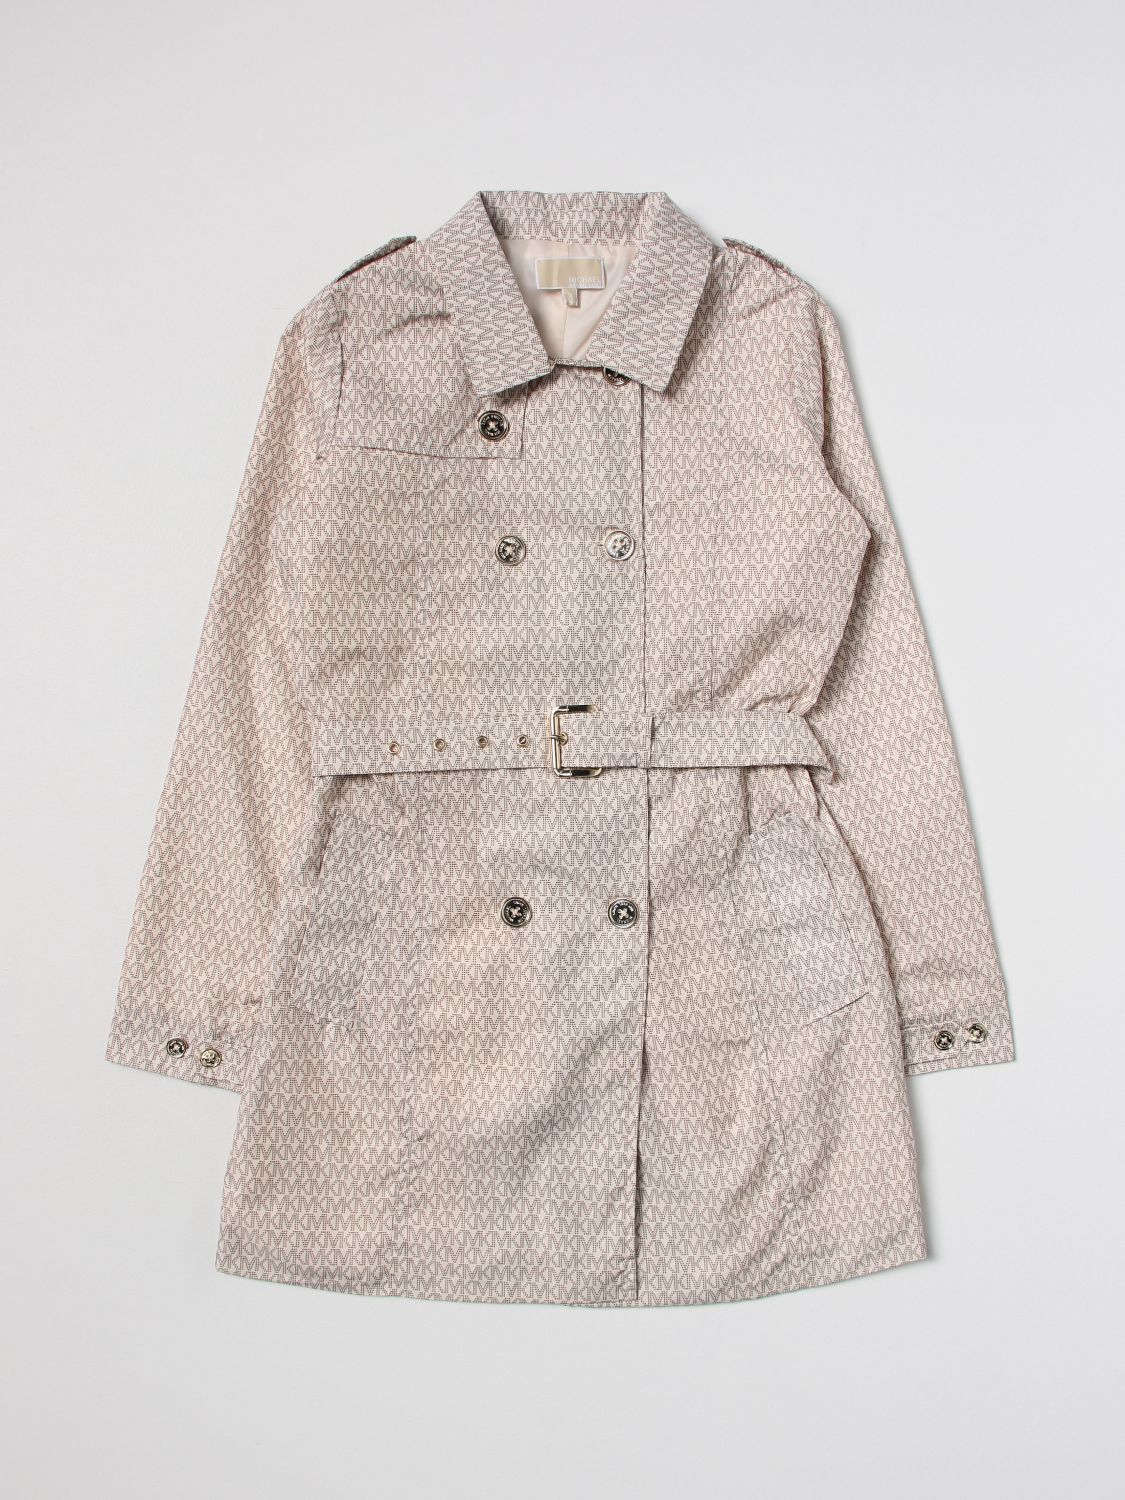 MICHAEL KORS: coat for girls - Beige | Michael Kors coat R16121 online on  